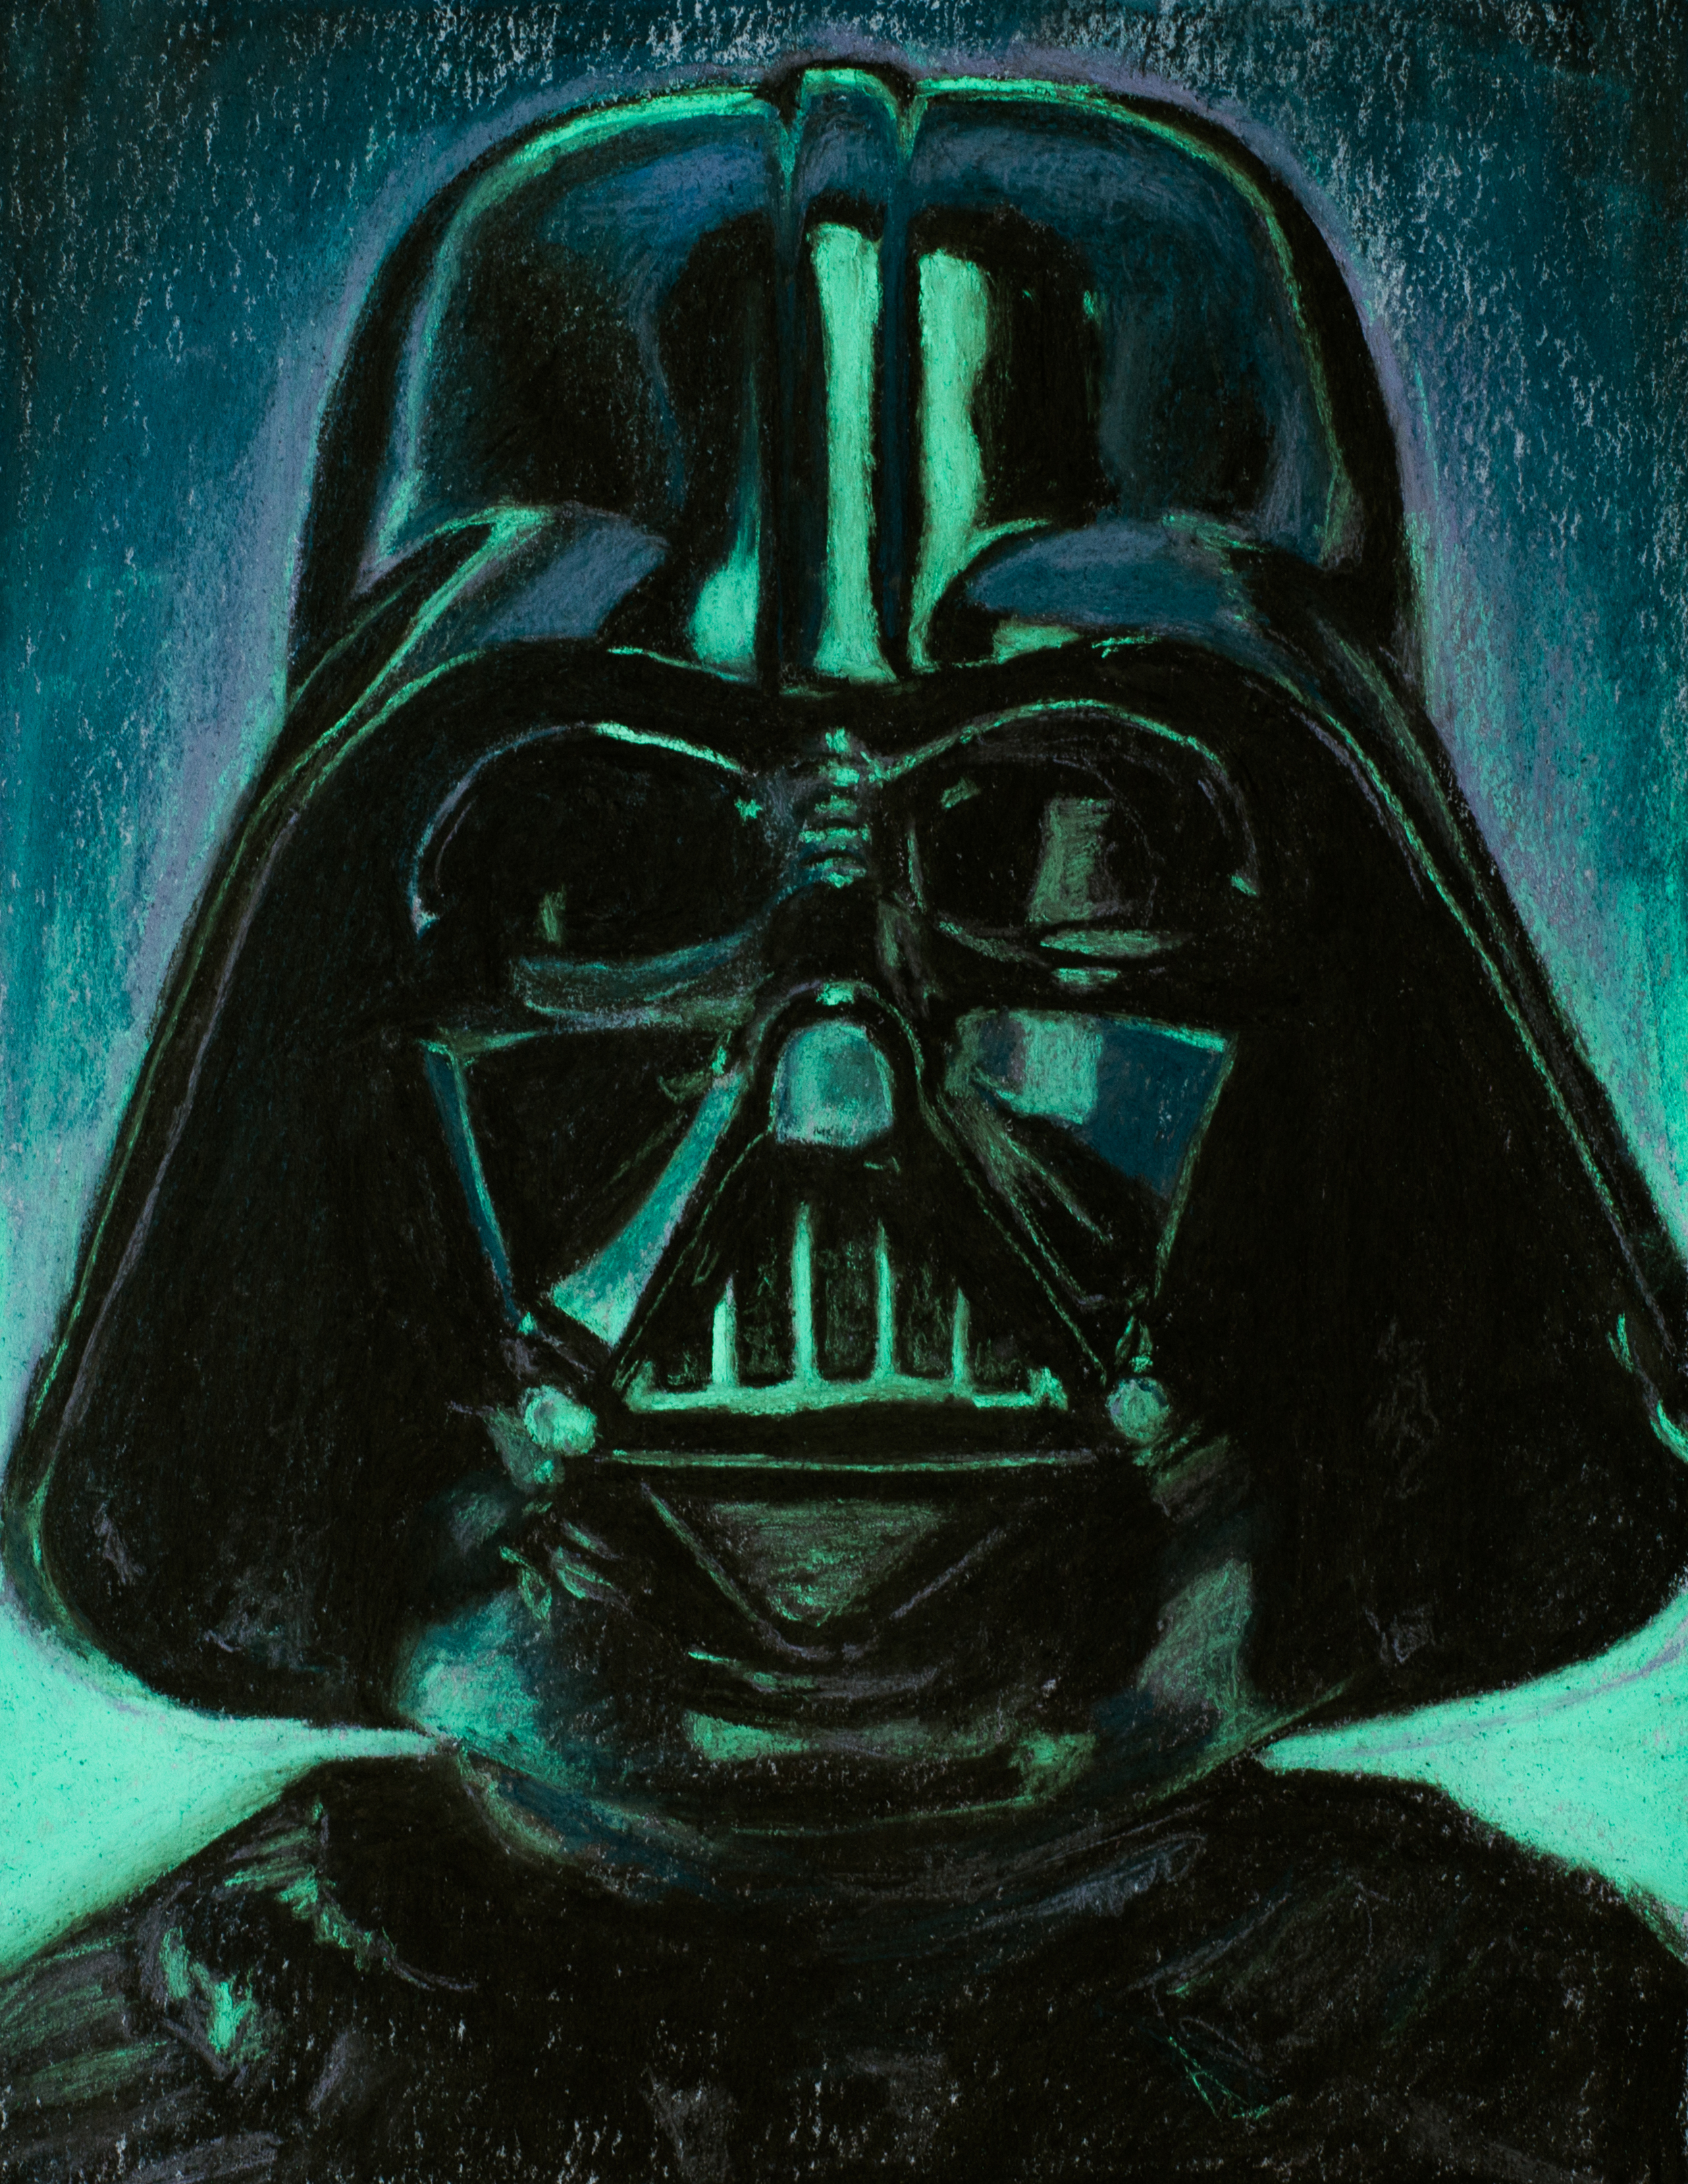 Darth Vader, Dark leader of the stars